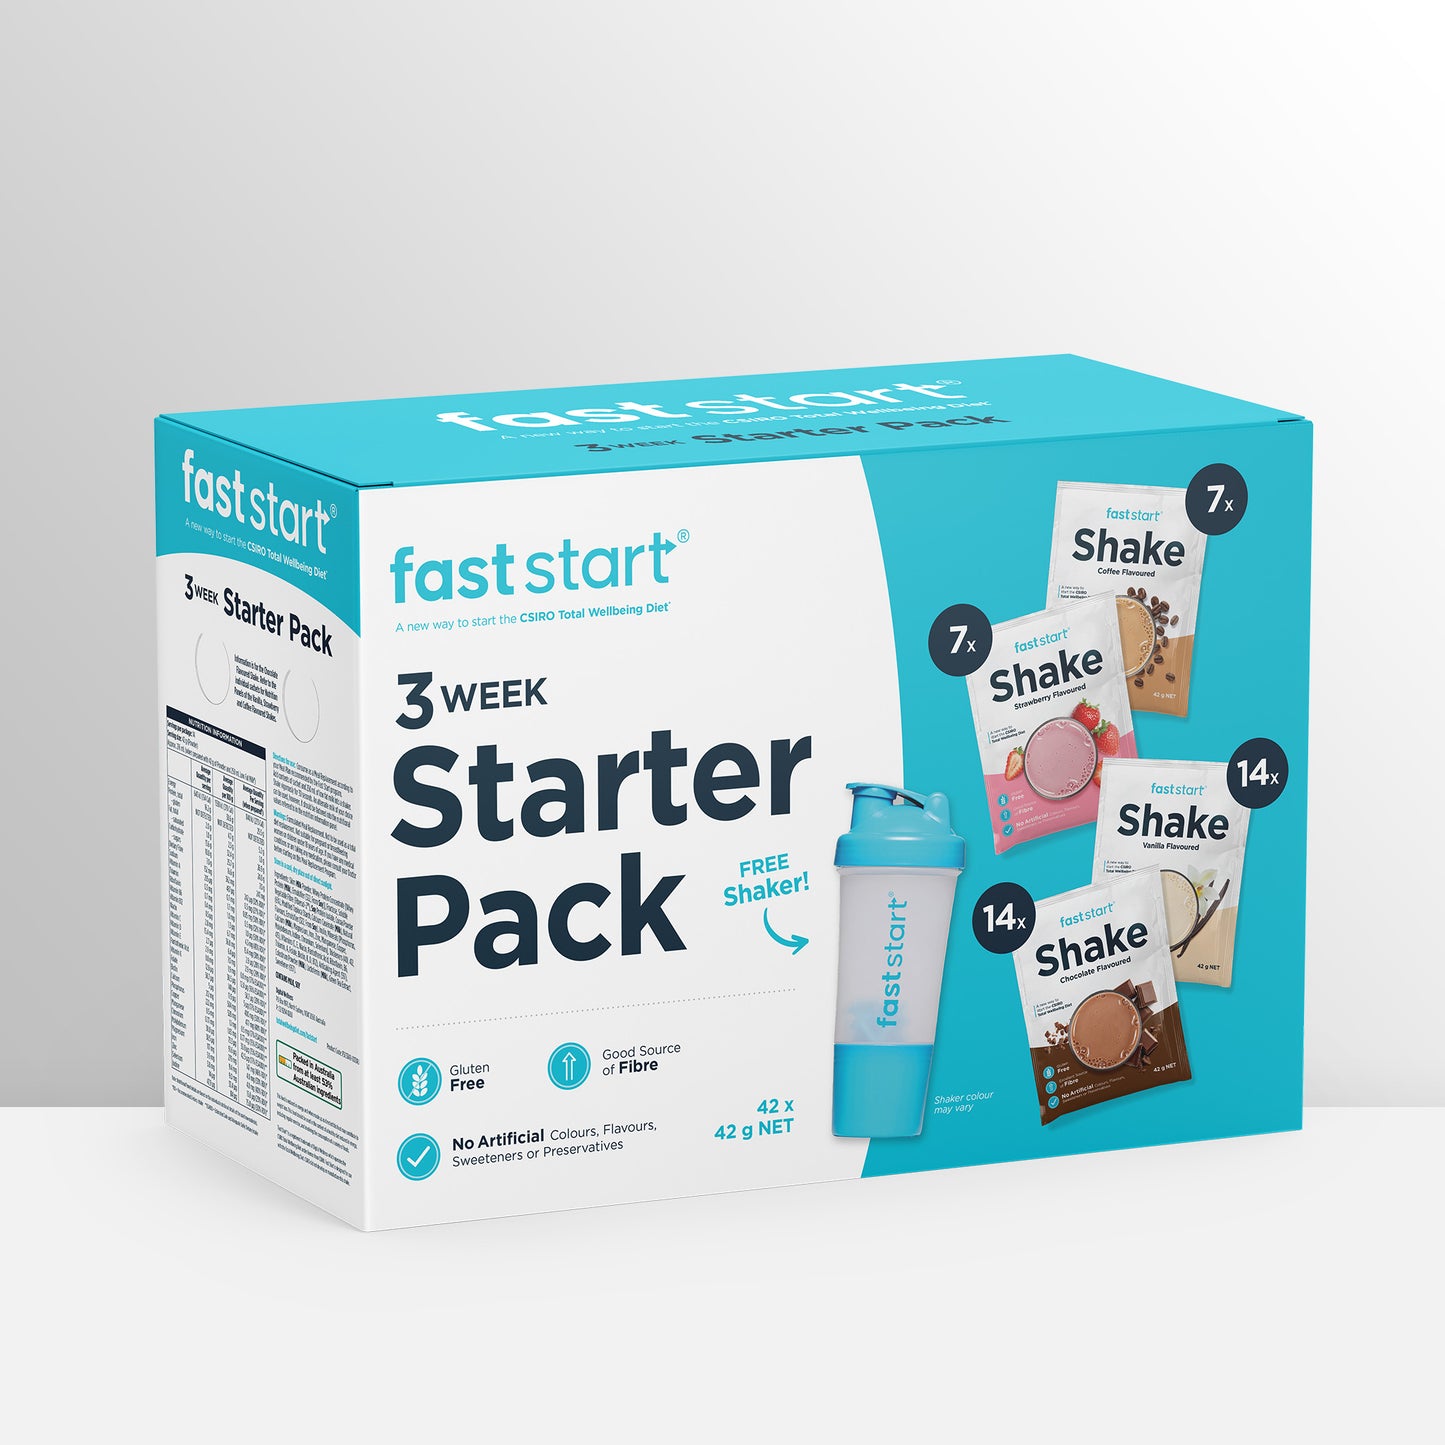 Fast Start 3 Week Starter Pack (42 sachets mix)